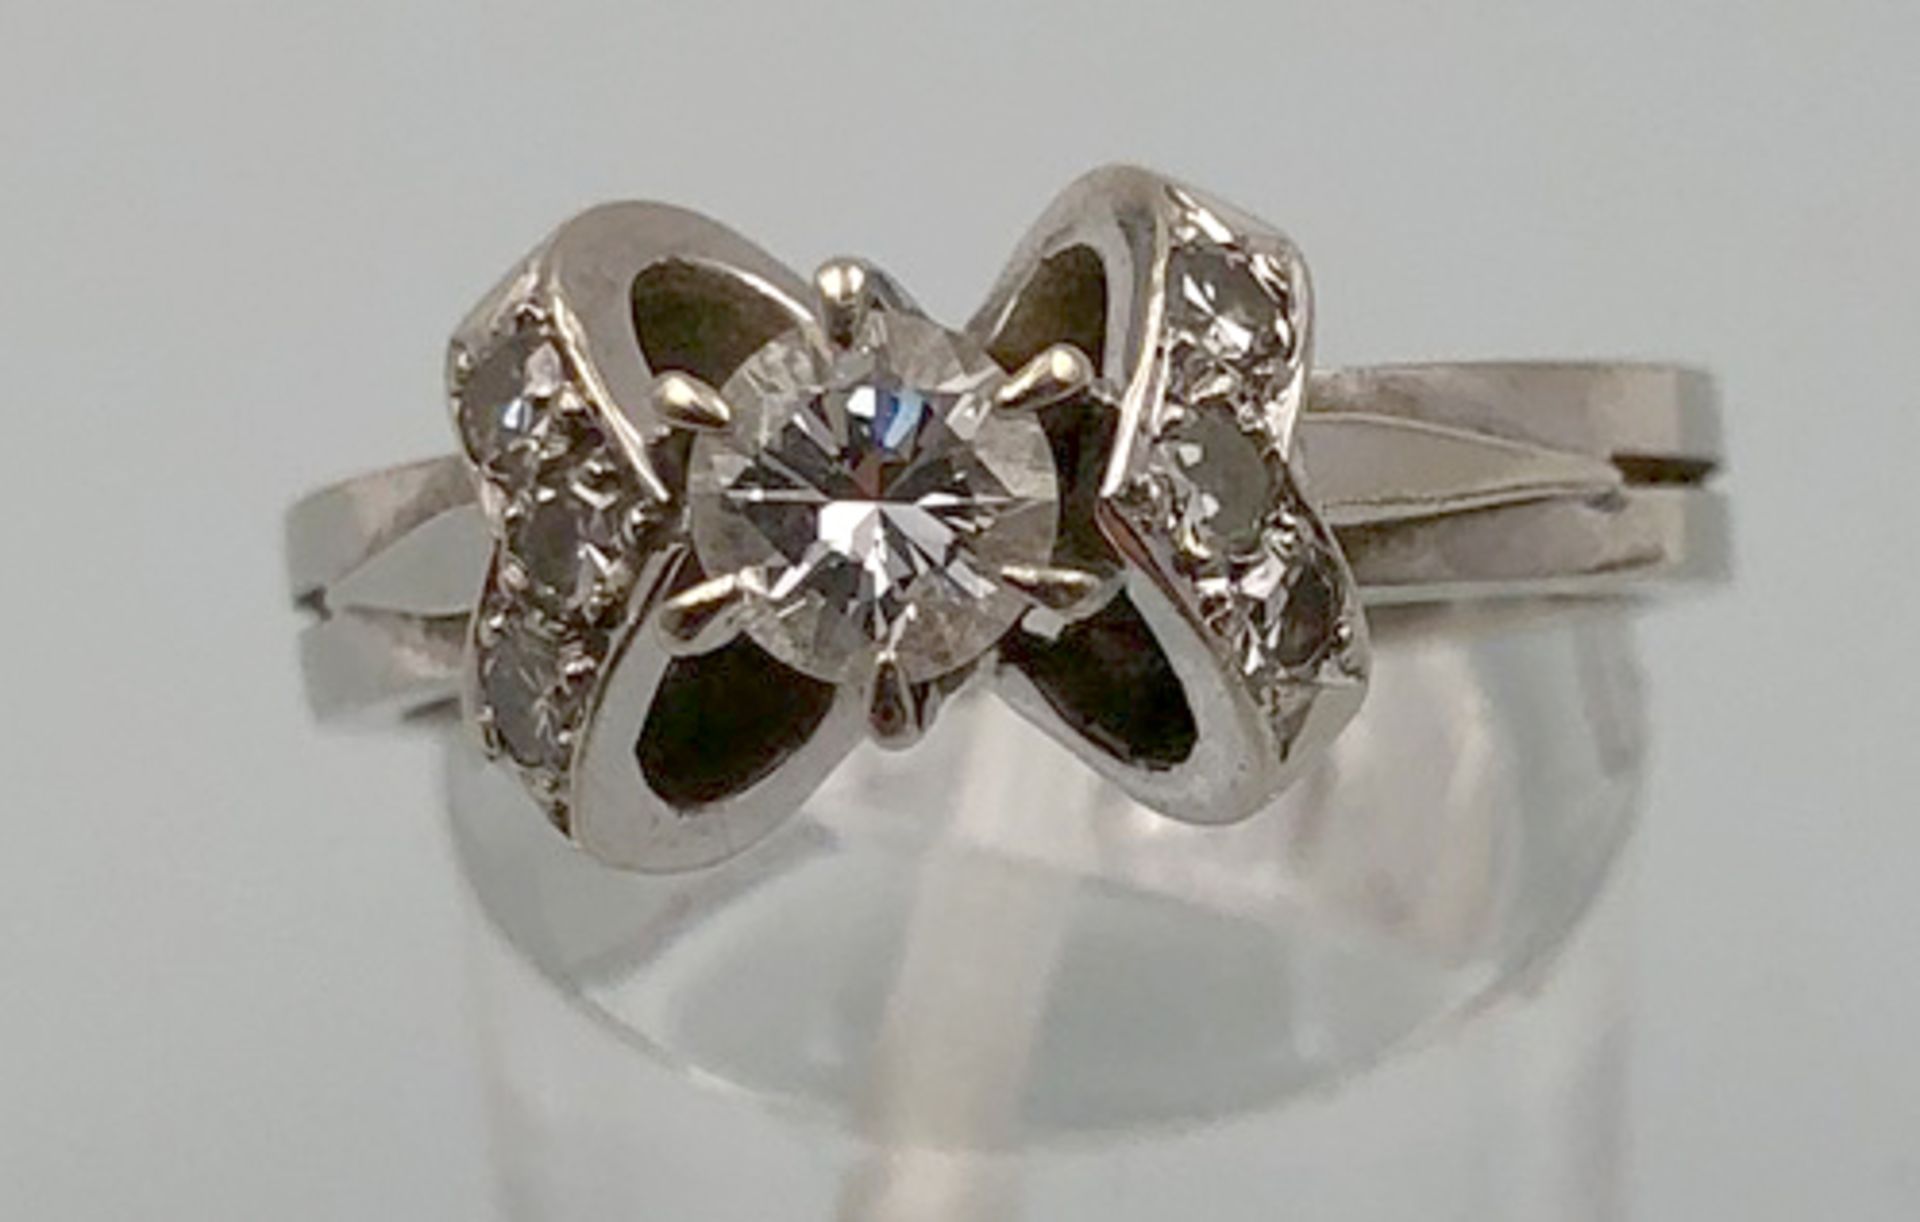 Weiß Gold 585. Ring mit Brillanten.4,0 Gramm Gesamtgewicht. Der mittige Diamant 4,48 mm Durchmesser,